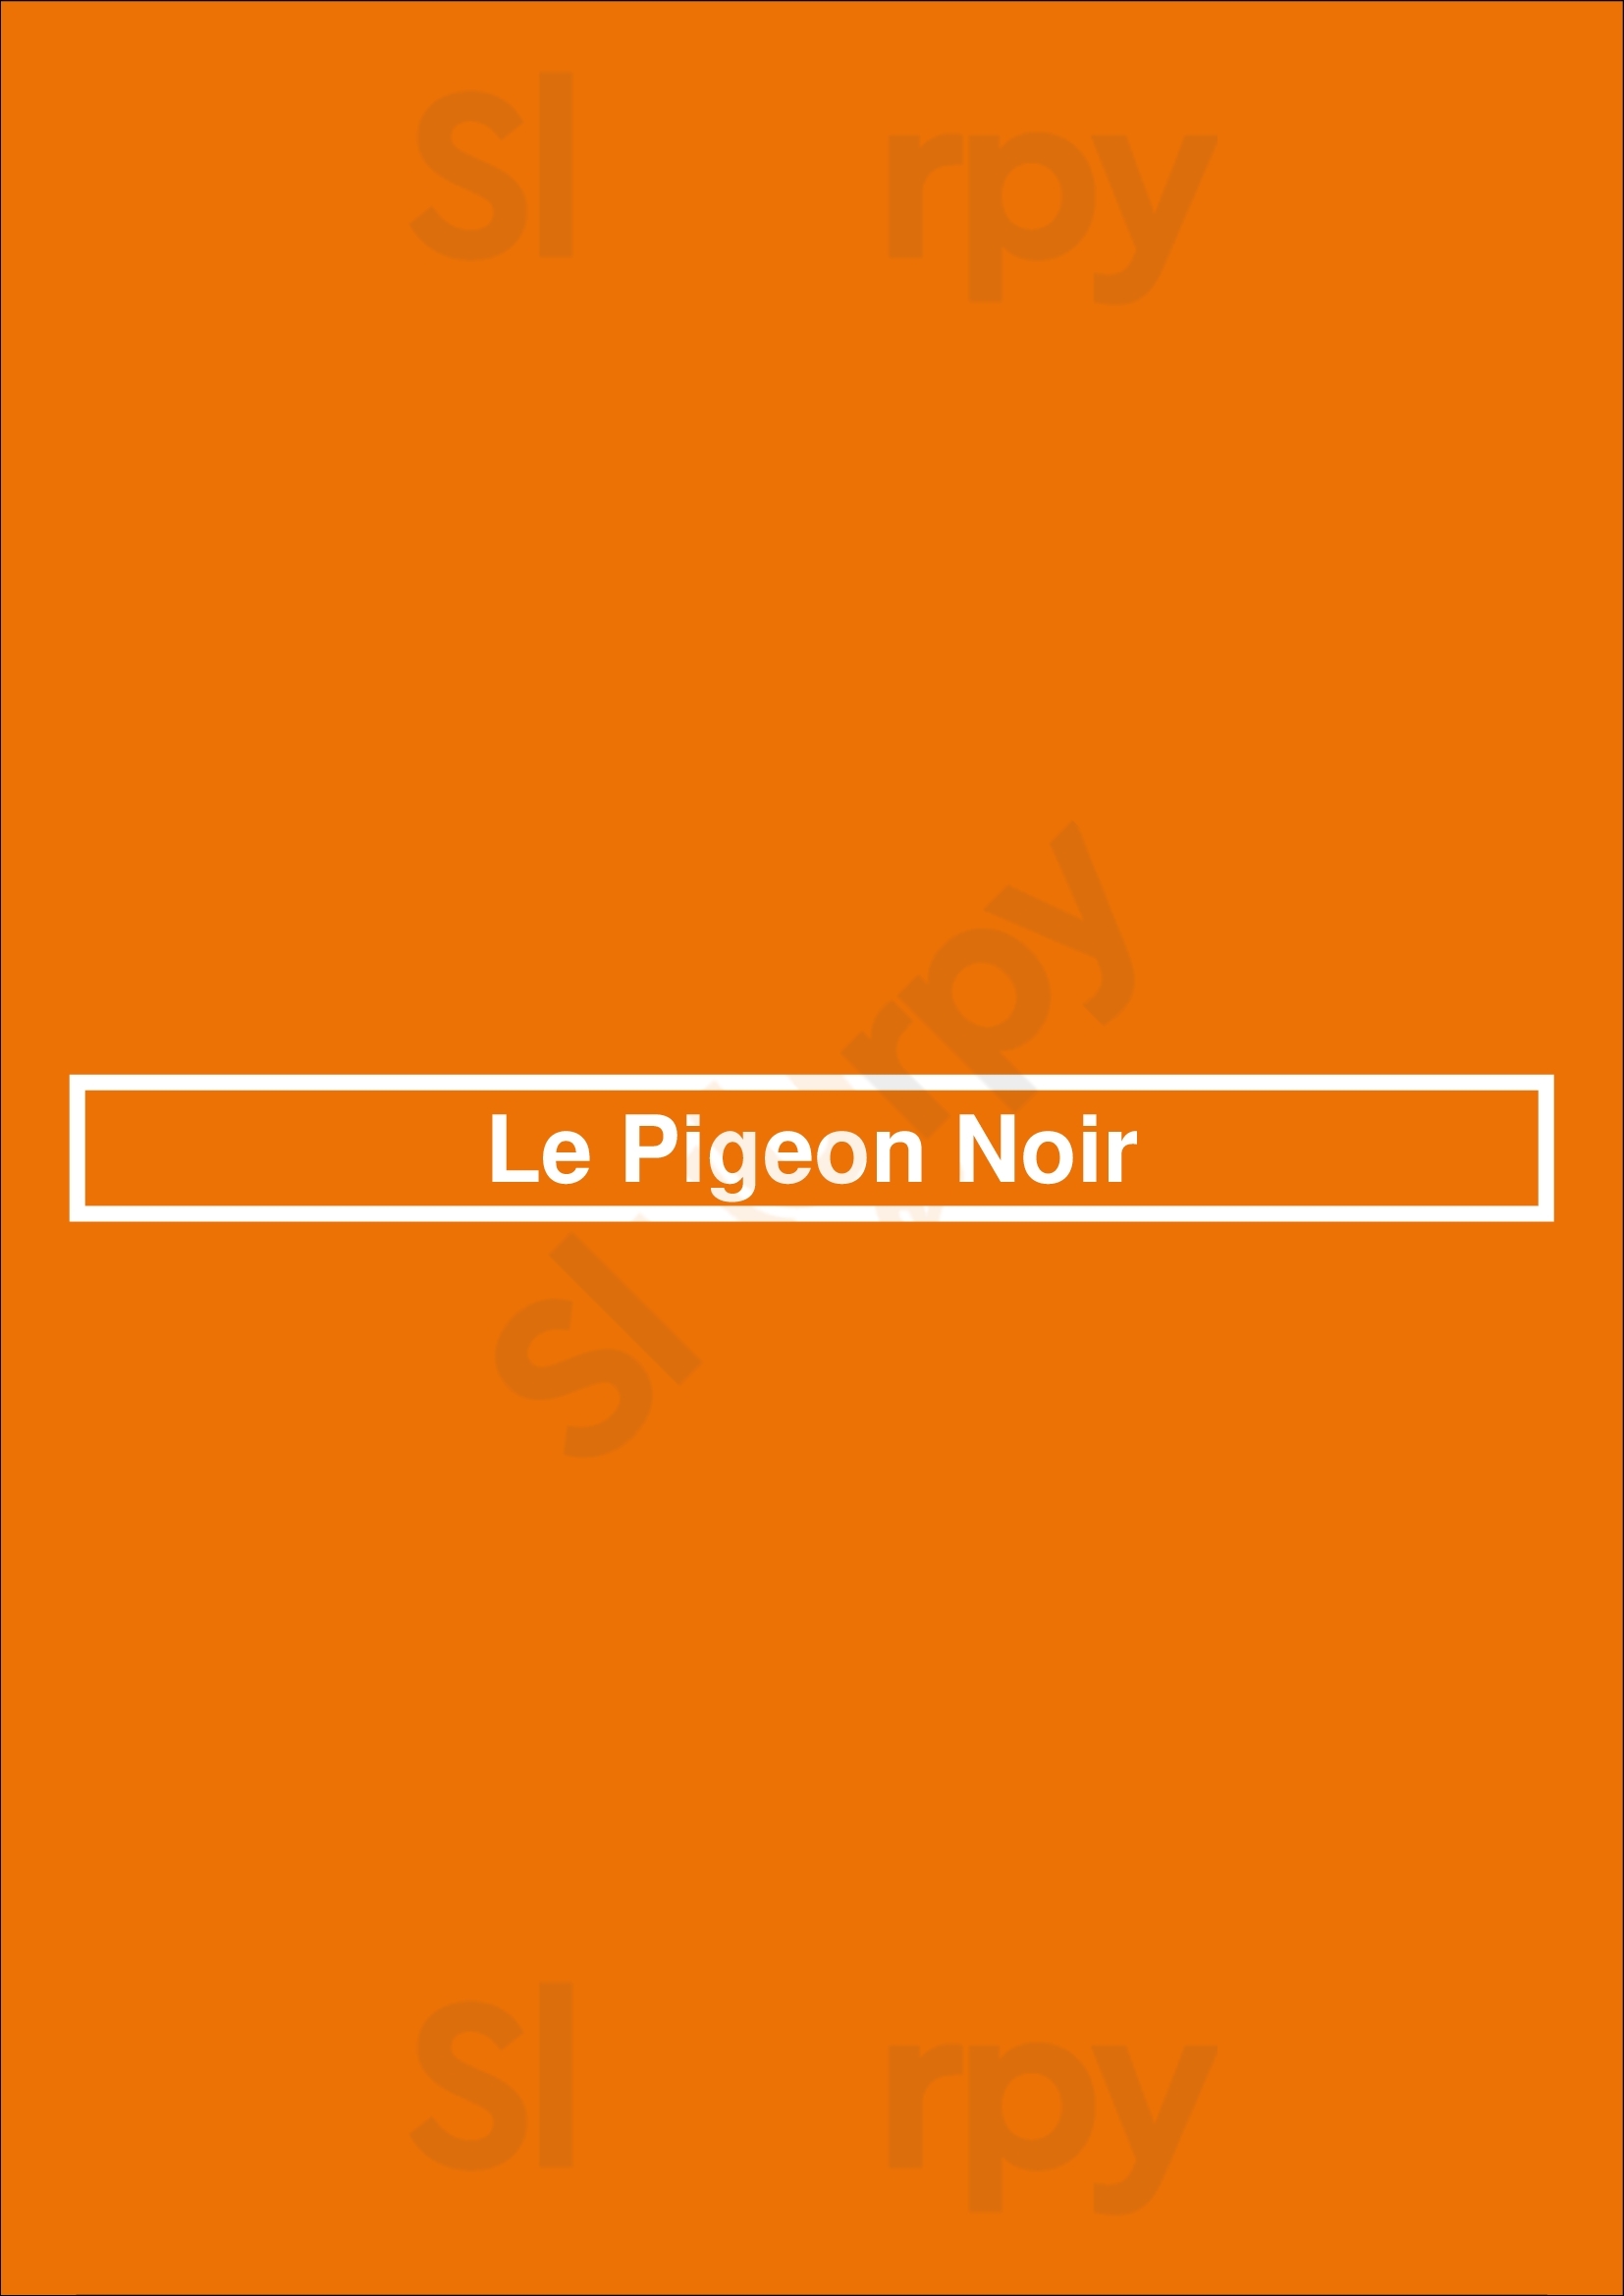 Le Pigeon Noir Uccle Menu - 1